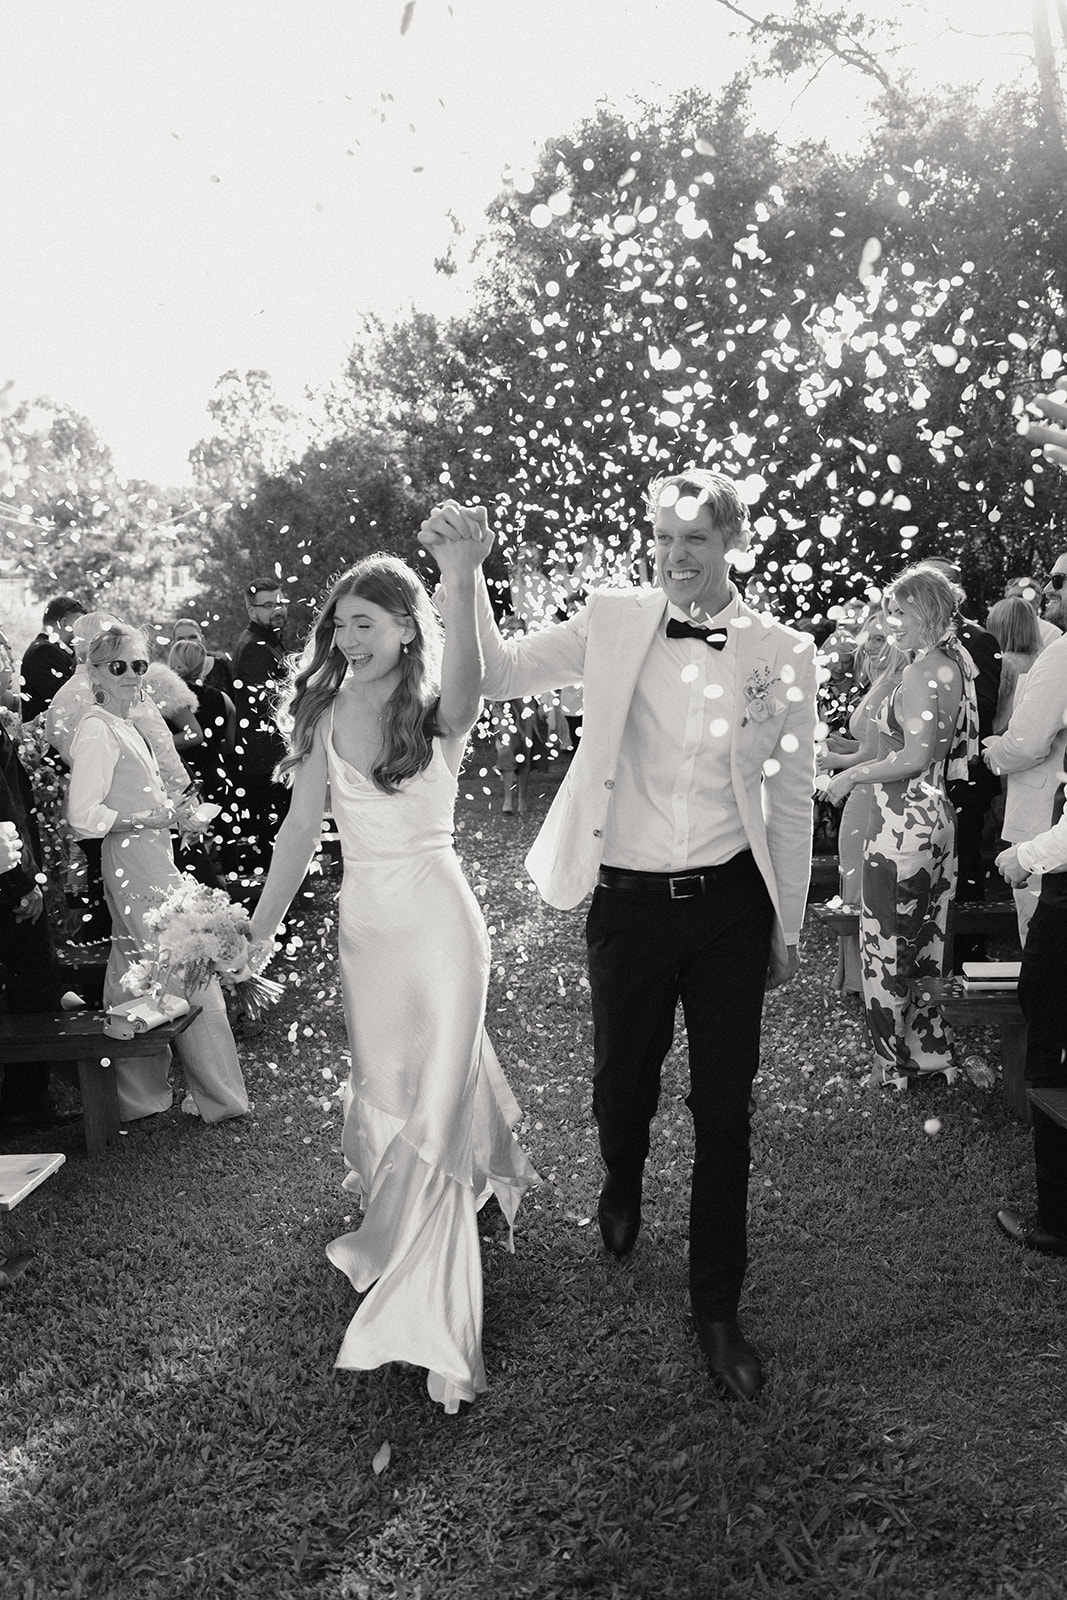 Brisbane editorial backyard wedding photography, Confetti Exit